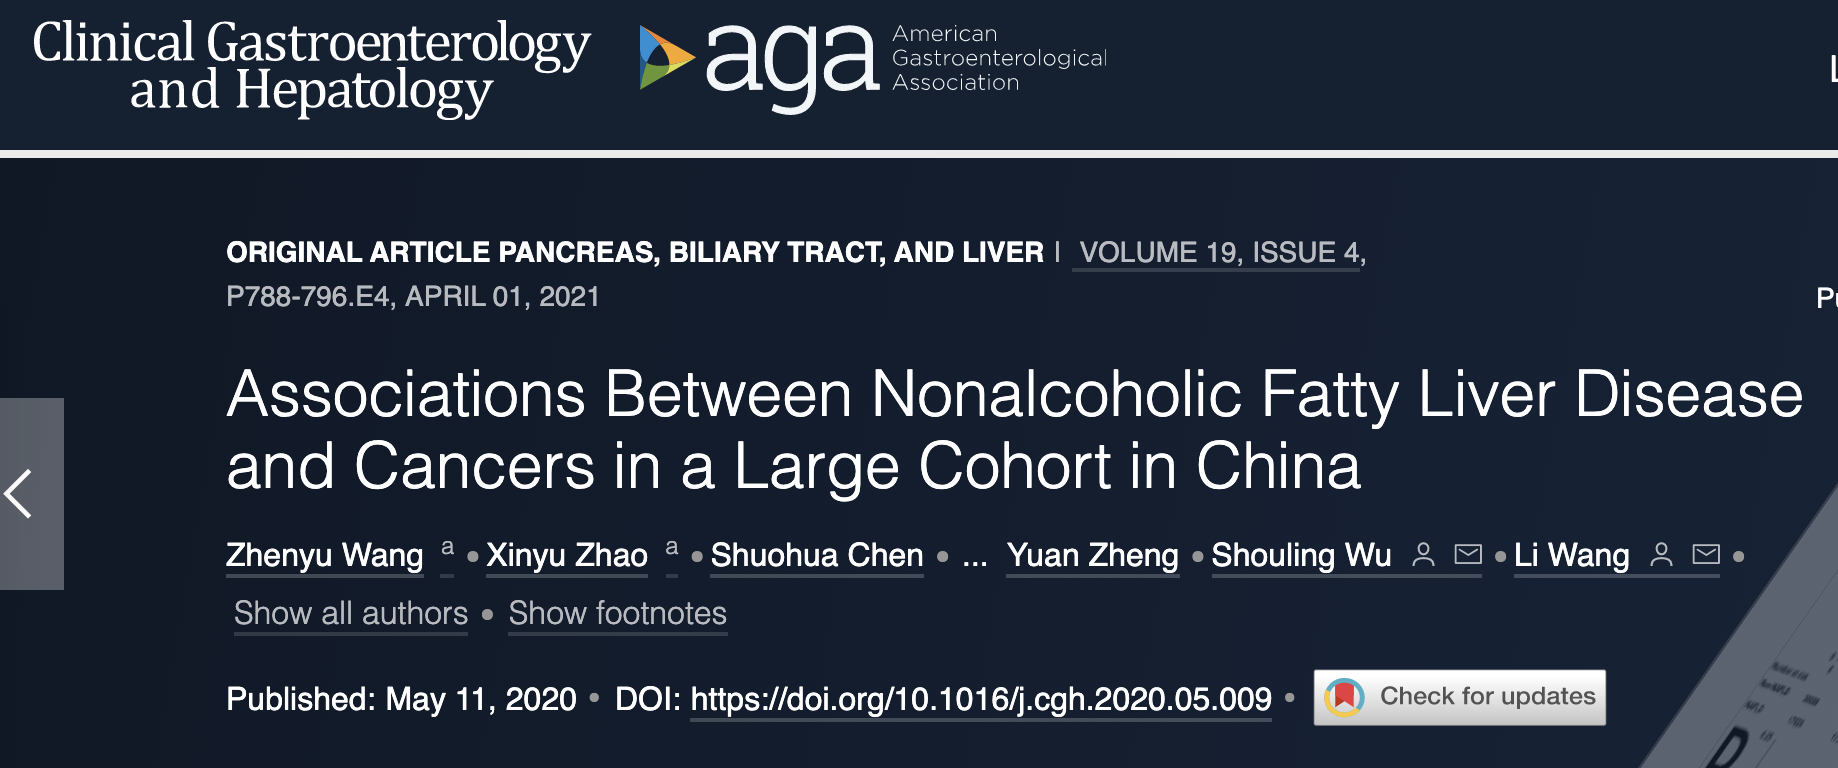 Clin Gastroenterology H: 中国大队列人群中非<font color="red">酒精性</font>脂肪肝与癌症发生的关系